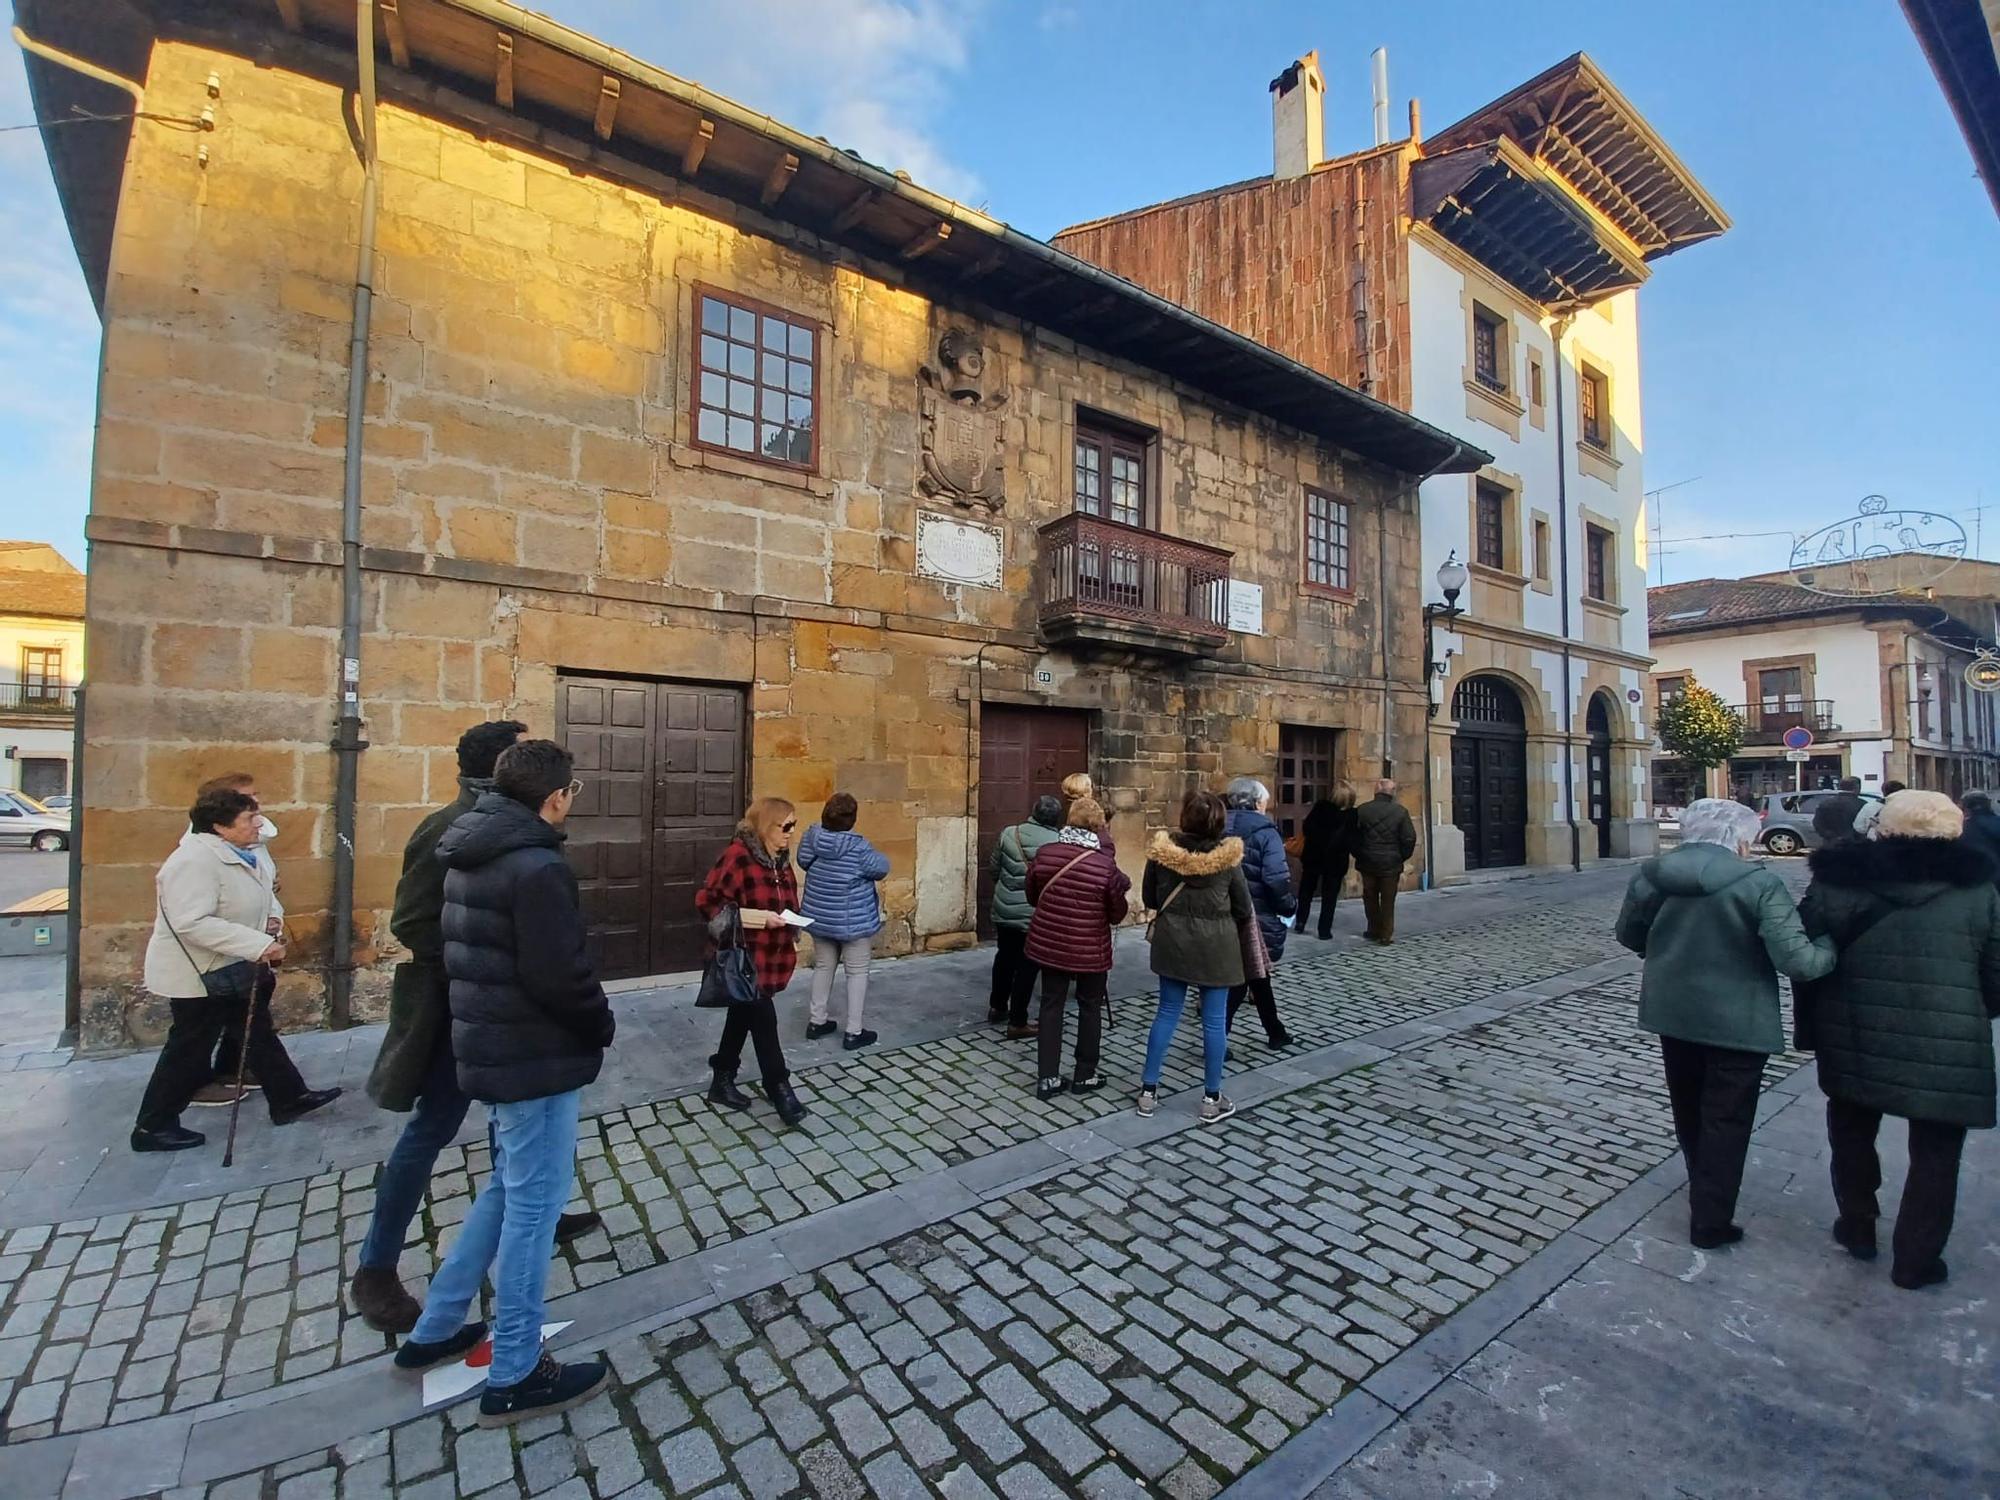 La ruta histórica de Villaviciosa: así es el increíble paseo por el casco antiguo para hacer un viaje en el tiempo